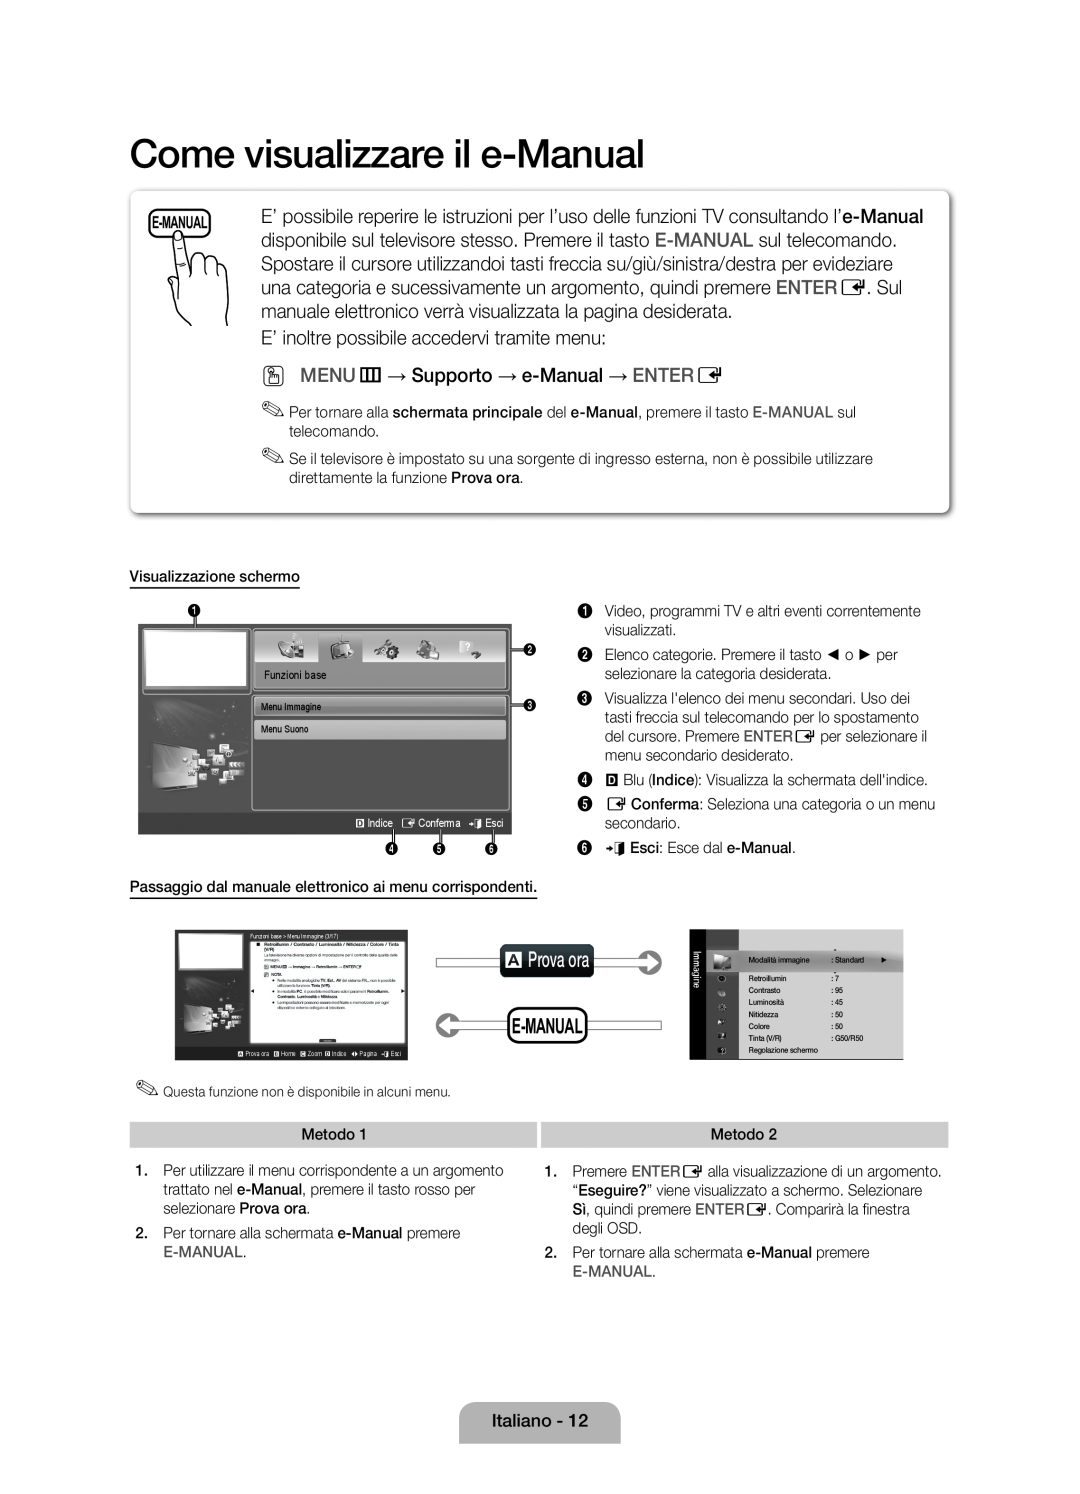 Samsung UE32D4000NWXXN Come visualizzare il e-Manual, aProva ora, E’ inoltre possibile accedervi tramite menu, E-Manual 